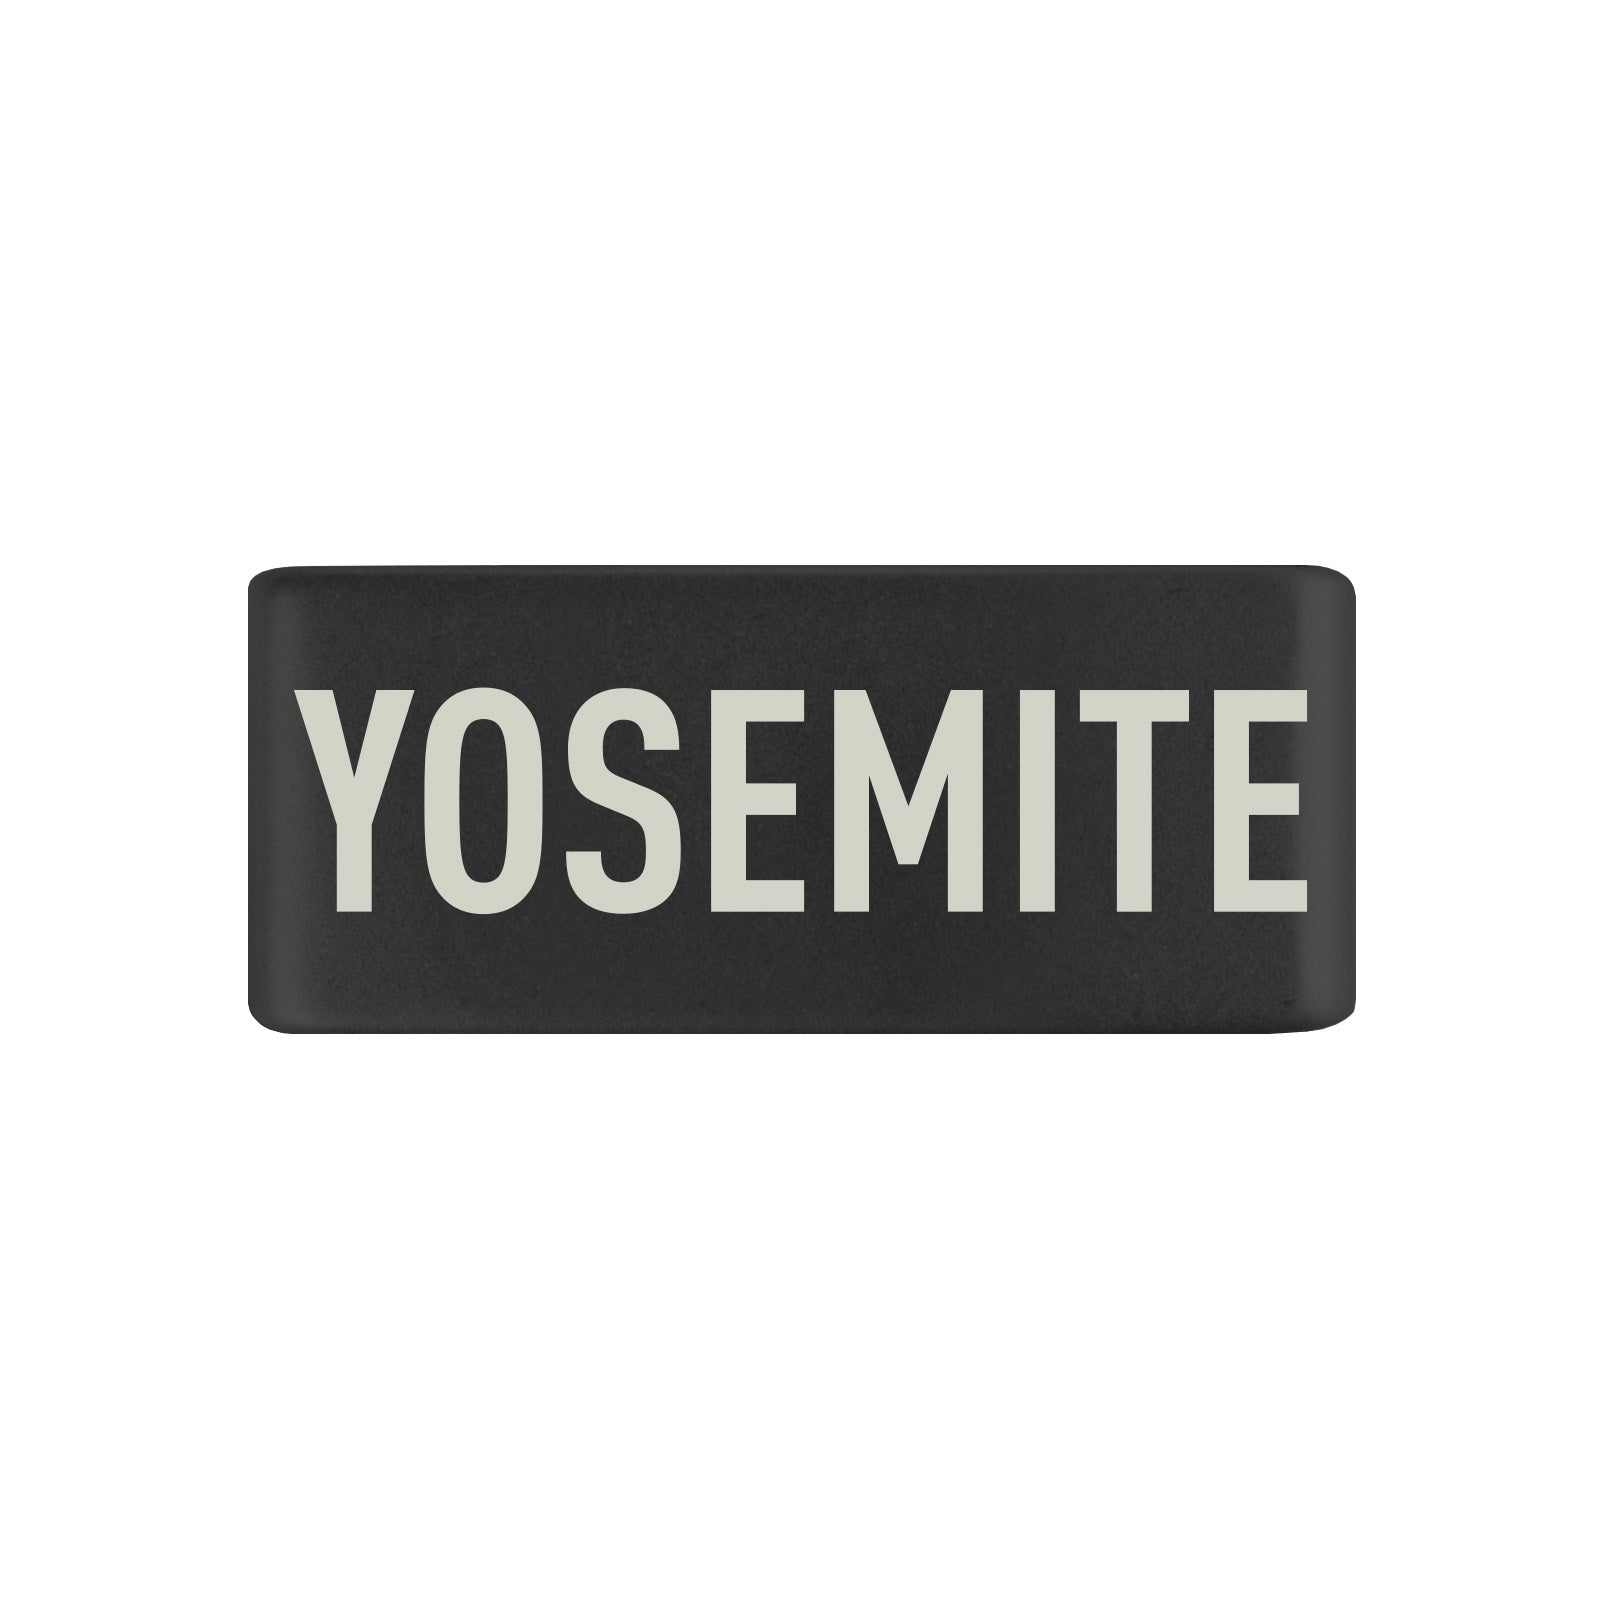 Yosemite Badge Badge 13mm - ROAD iD